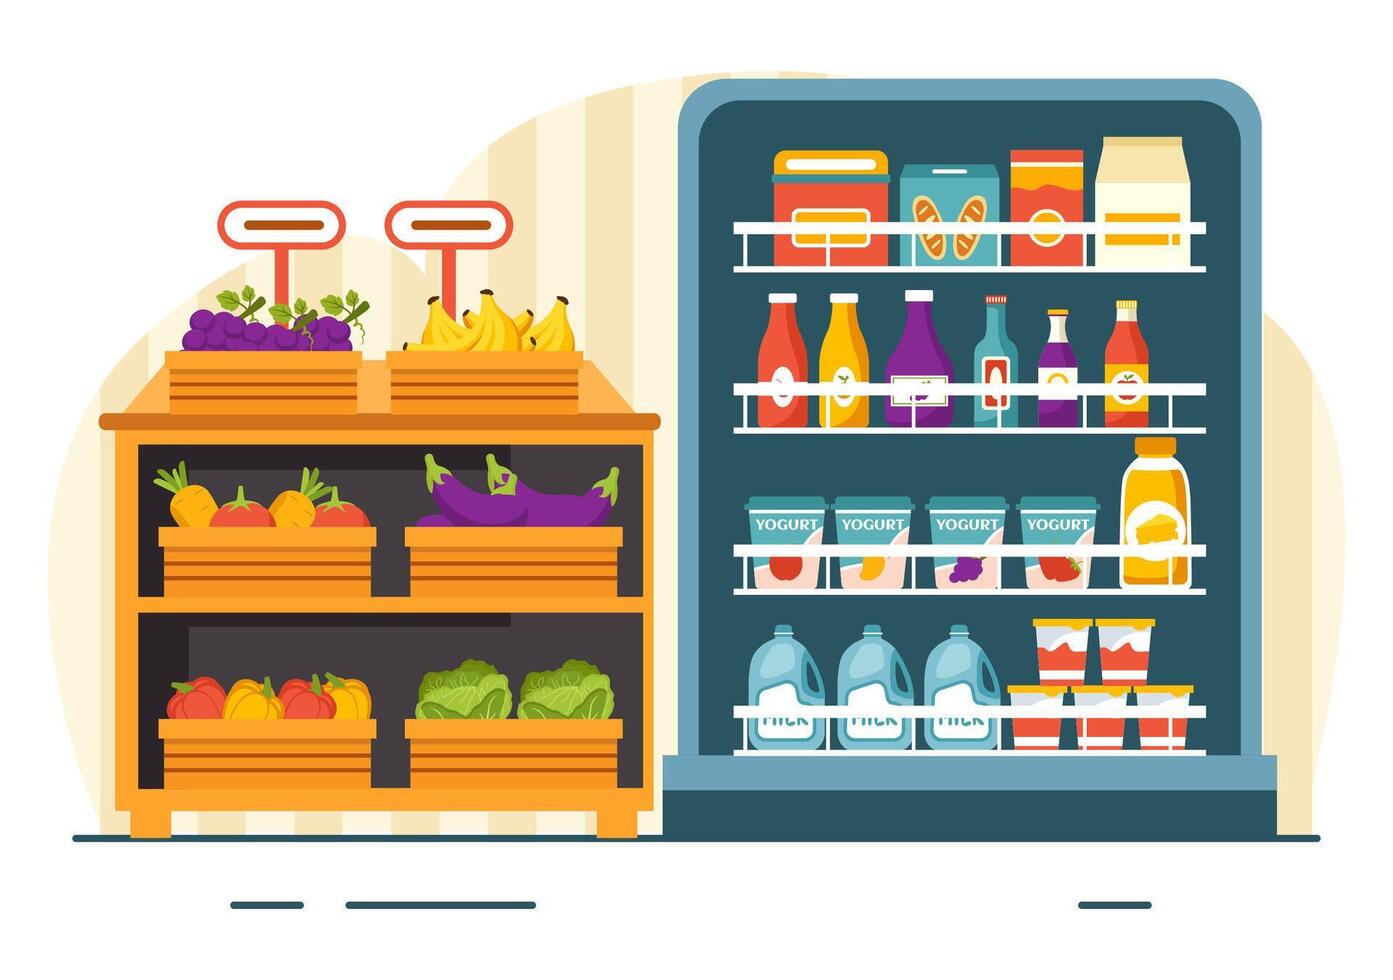 Lebensmittelgeschäft Geschäft Regal Vektor Illustration mit Lebensmittel Artikel und Produkte Sortiment auf das Supermarkt zum Einkaufen Täglich Bedürfnisse im eben Hintergrund